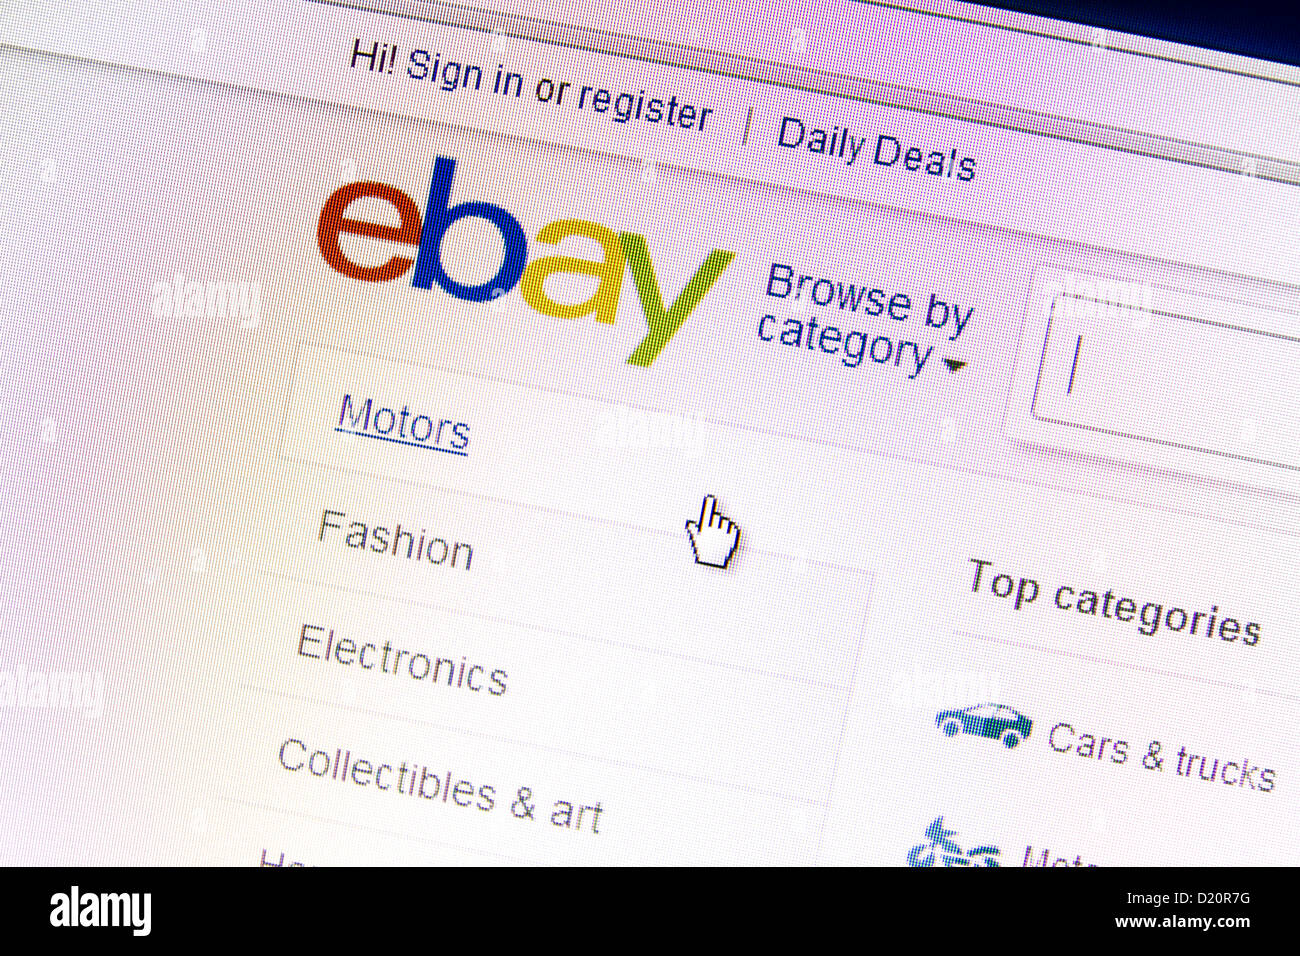 Site web Ebay sous une loupe eBay est une société multinationale américaine et l'entreprise de commerce électronique Banque D'Images